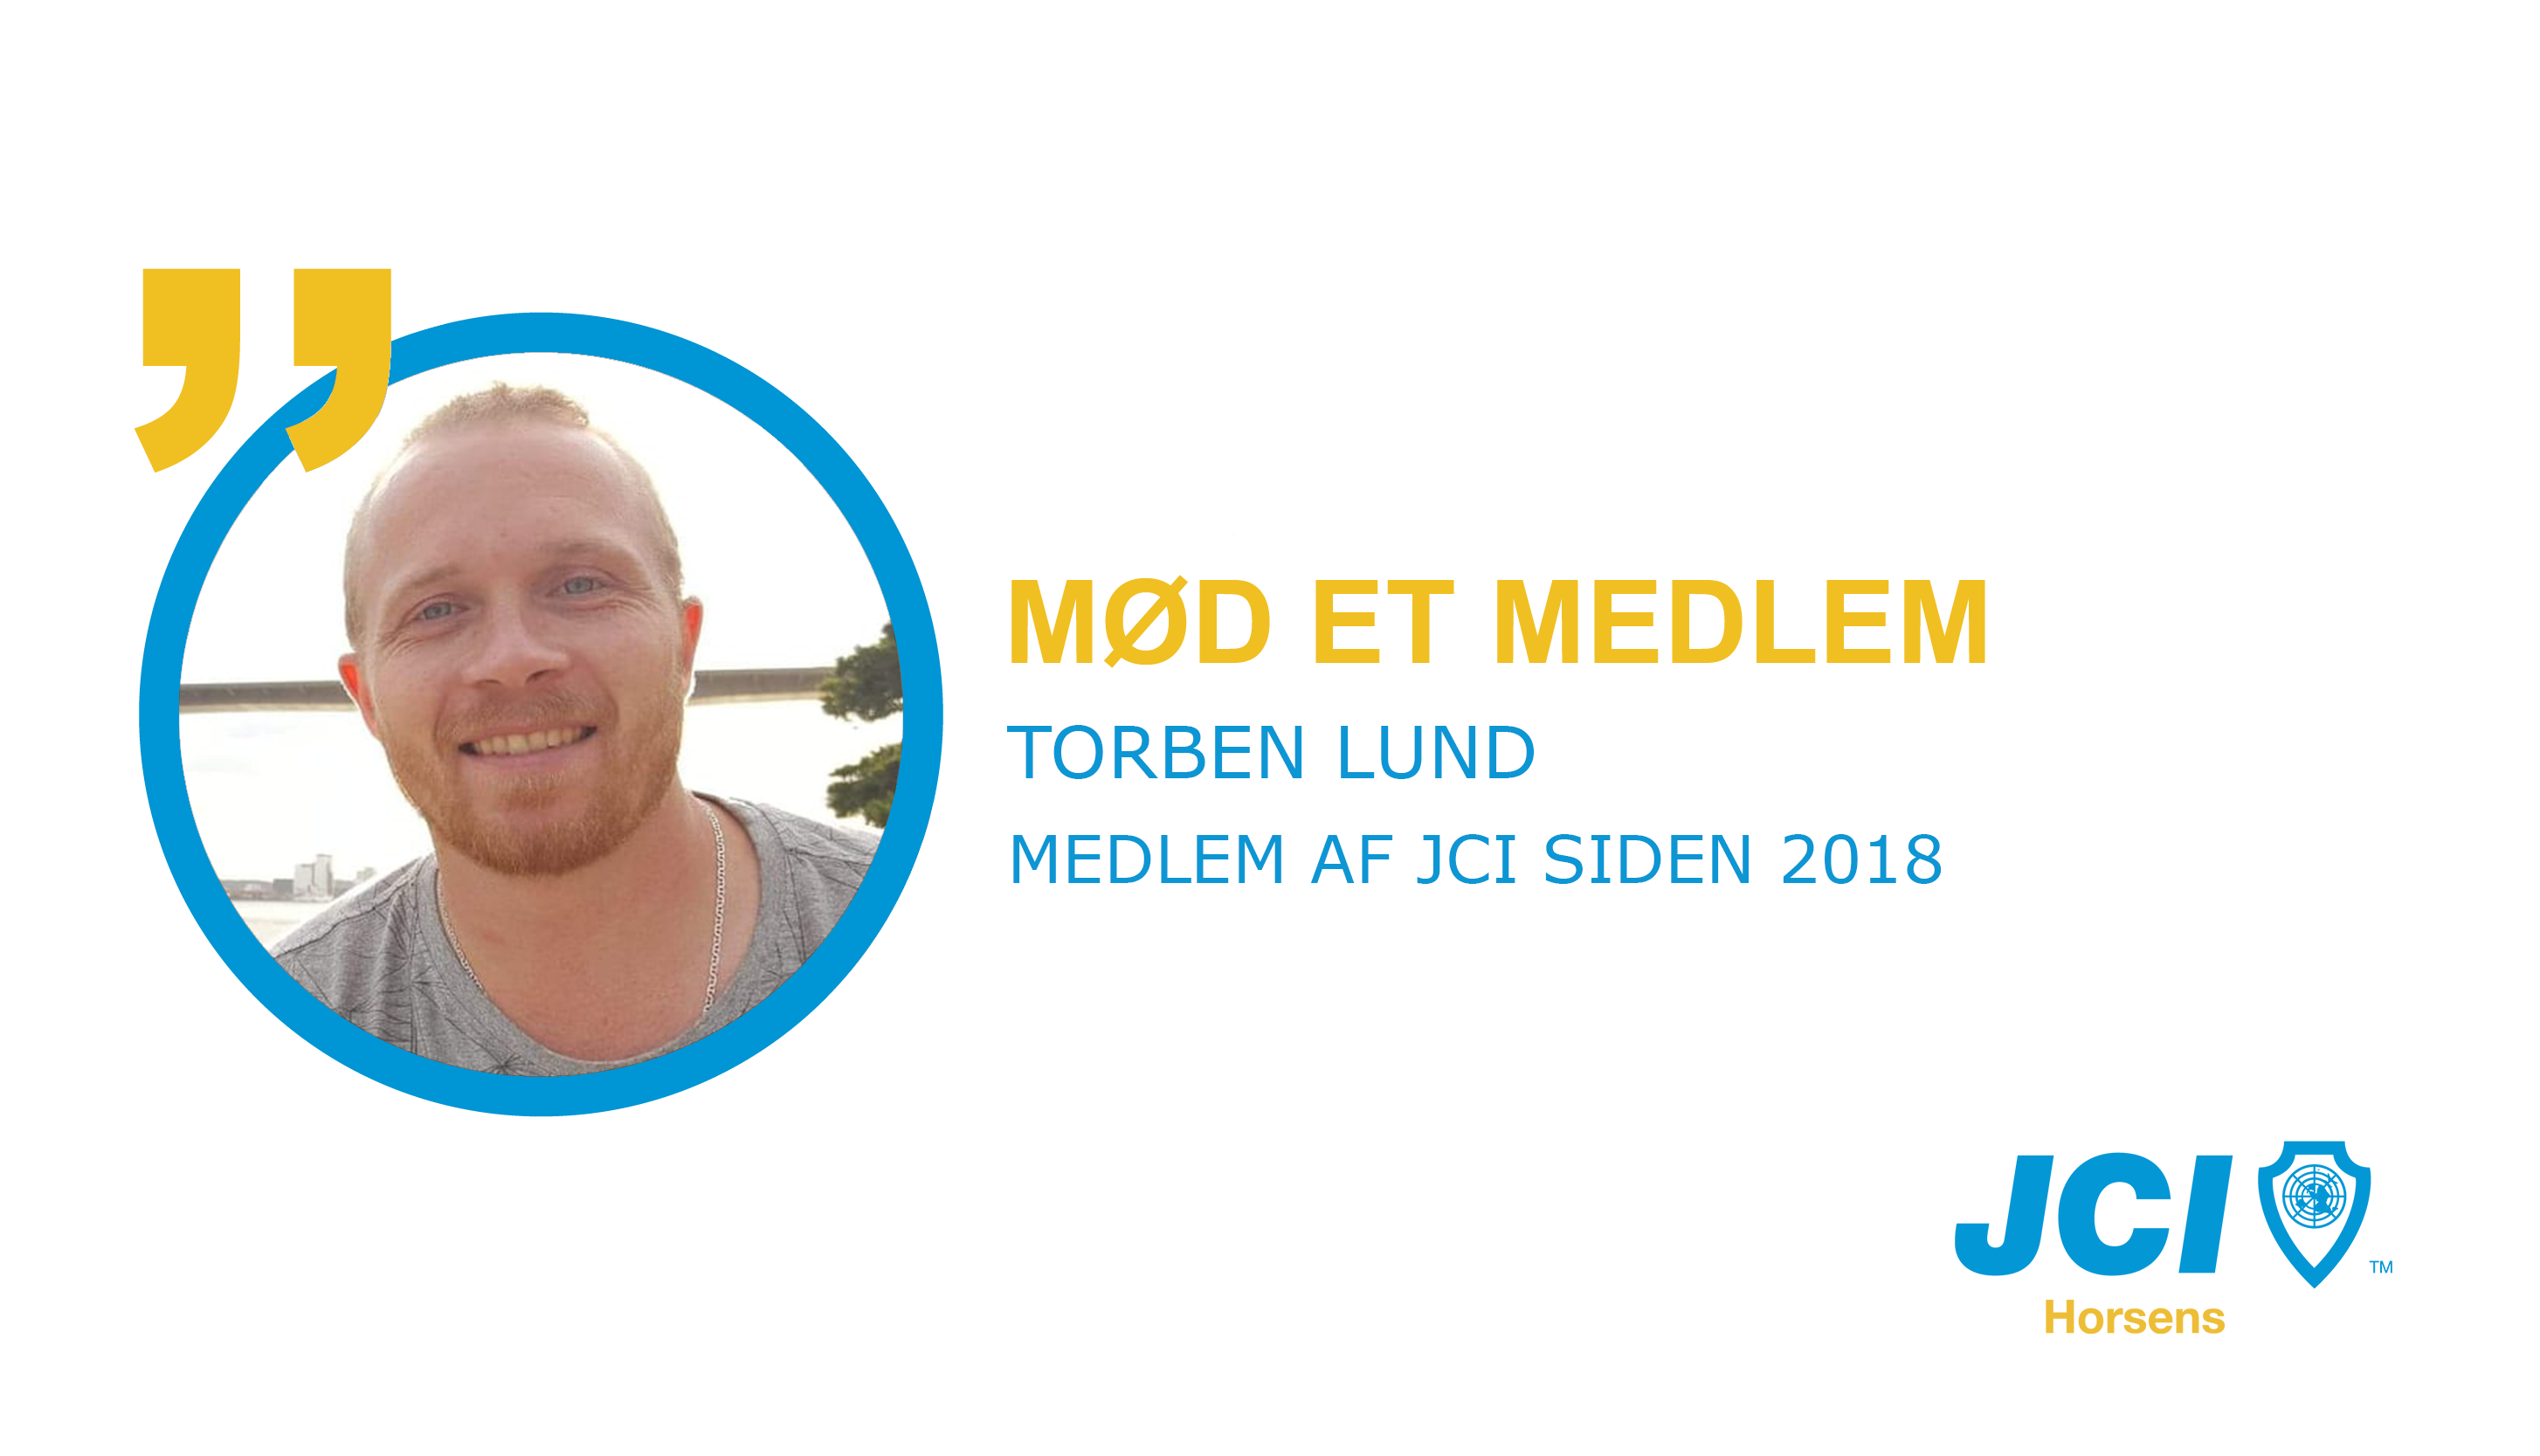 Mød et medlem af JCI Horsens: Torben Lund